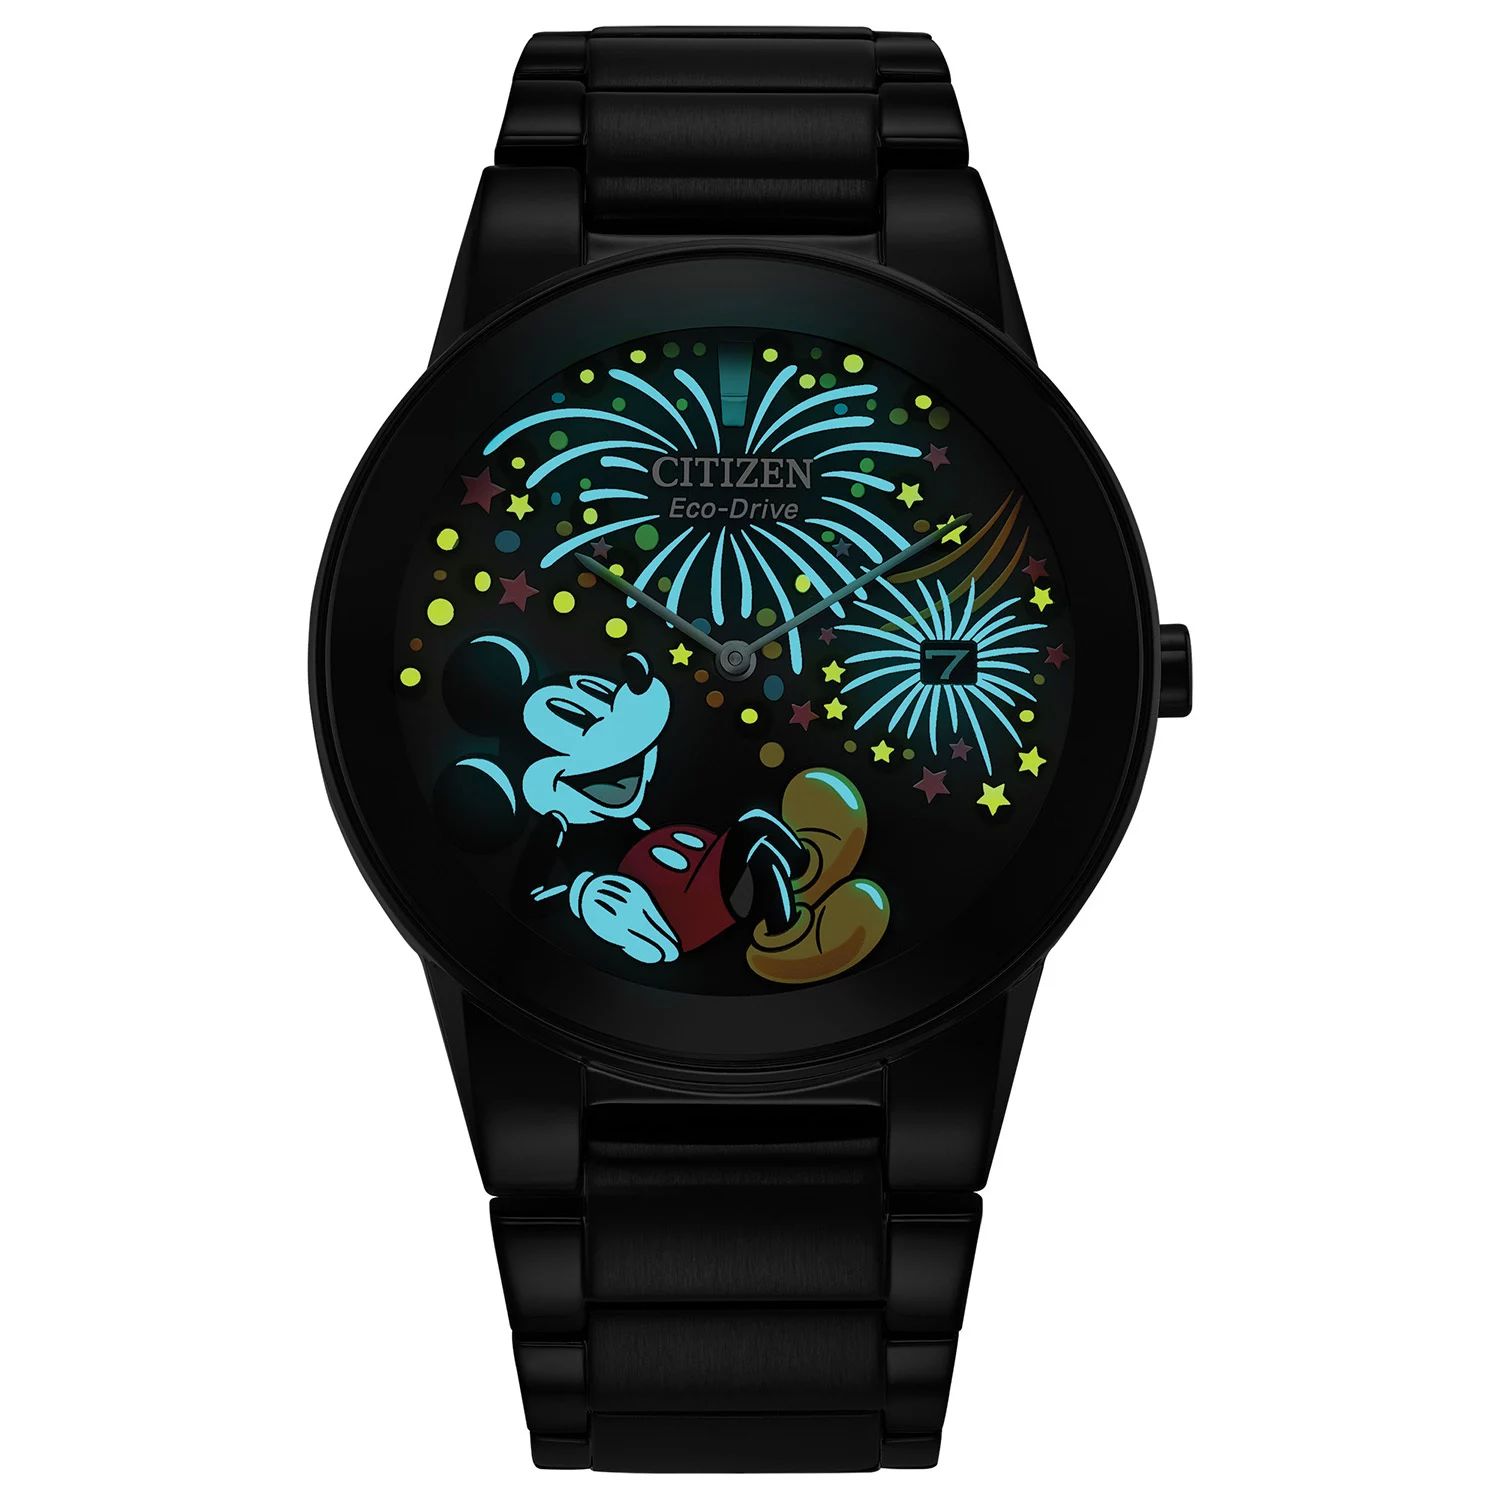 Мужские часы Disney Eco-Drive Mickey Mouse Fiesta 100th Anniversary с черным браслетом из нержавеющей стали от производителя — AU1095-57W Citizen цена и фото